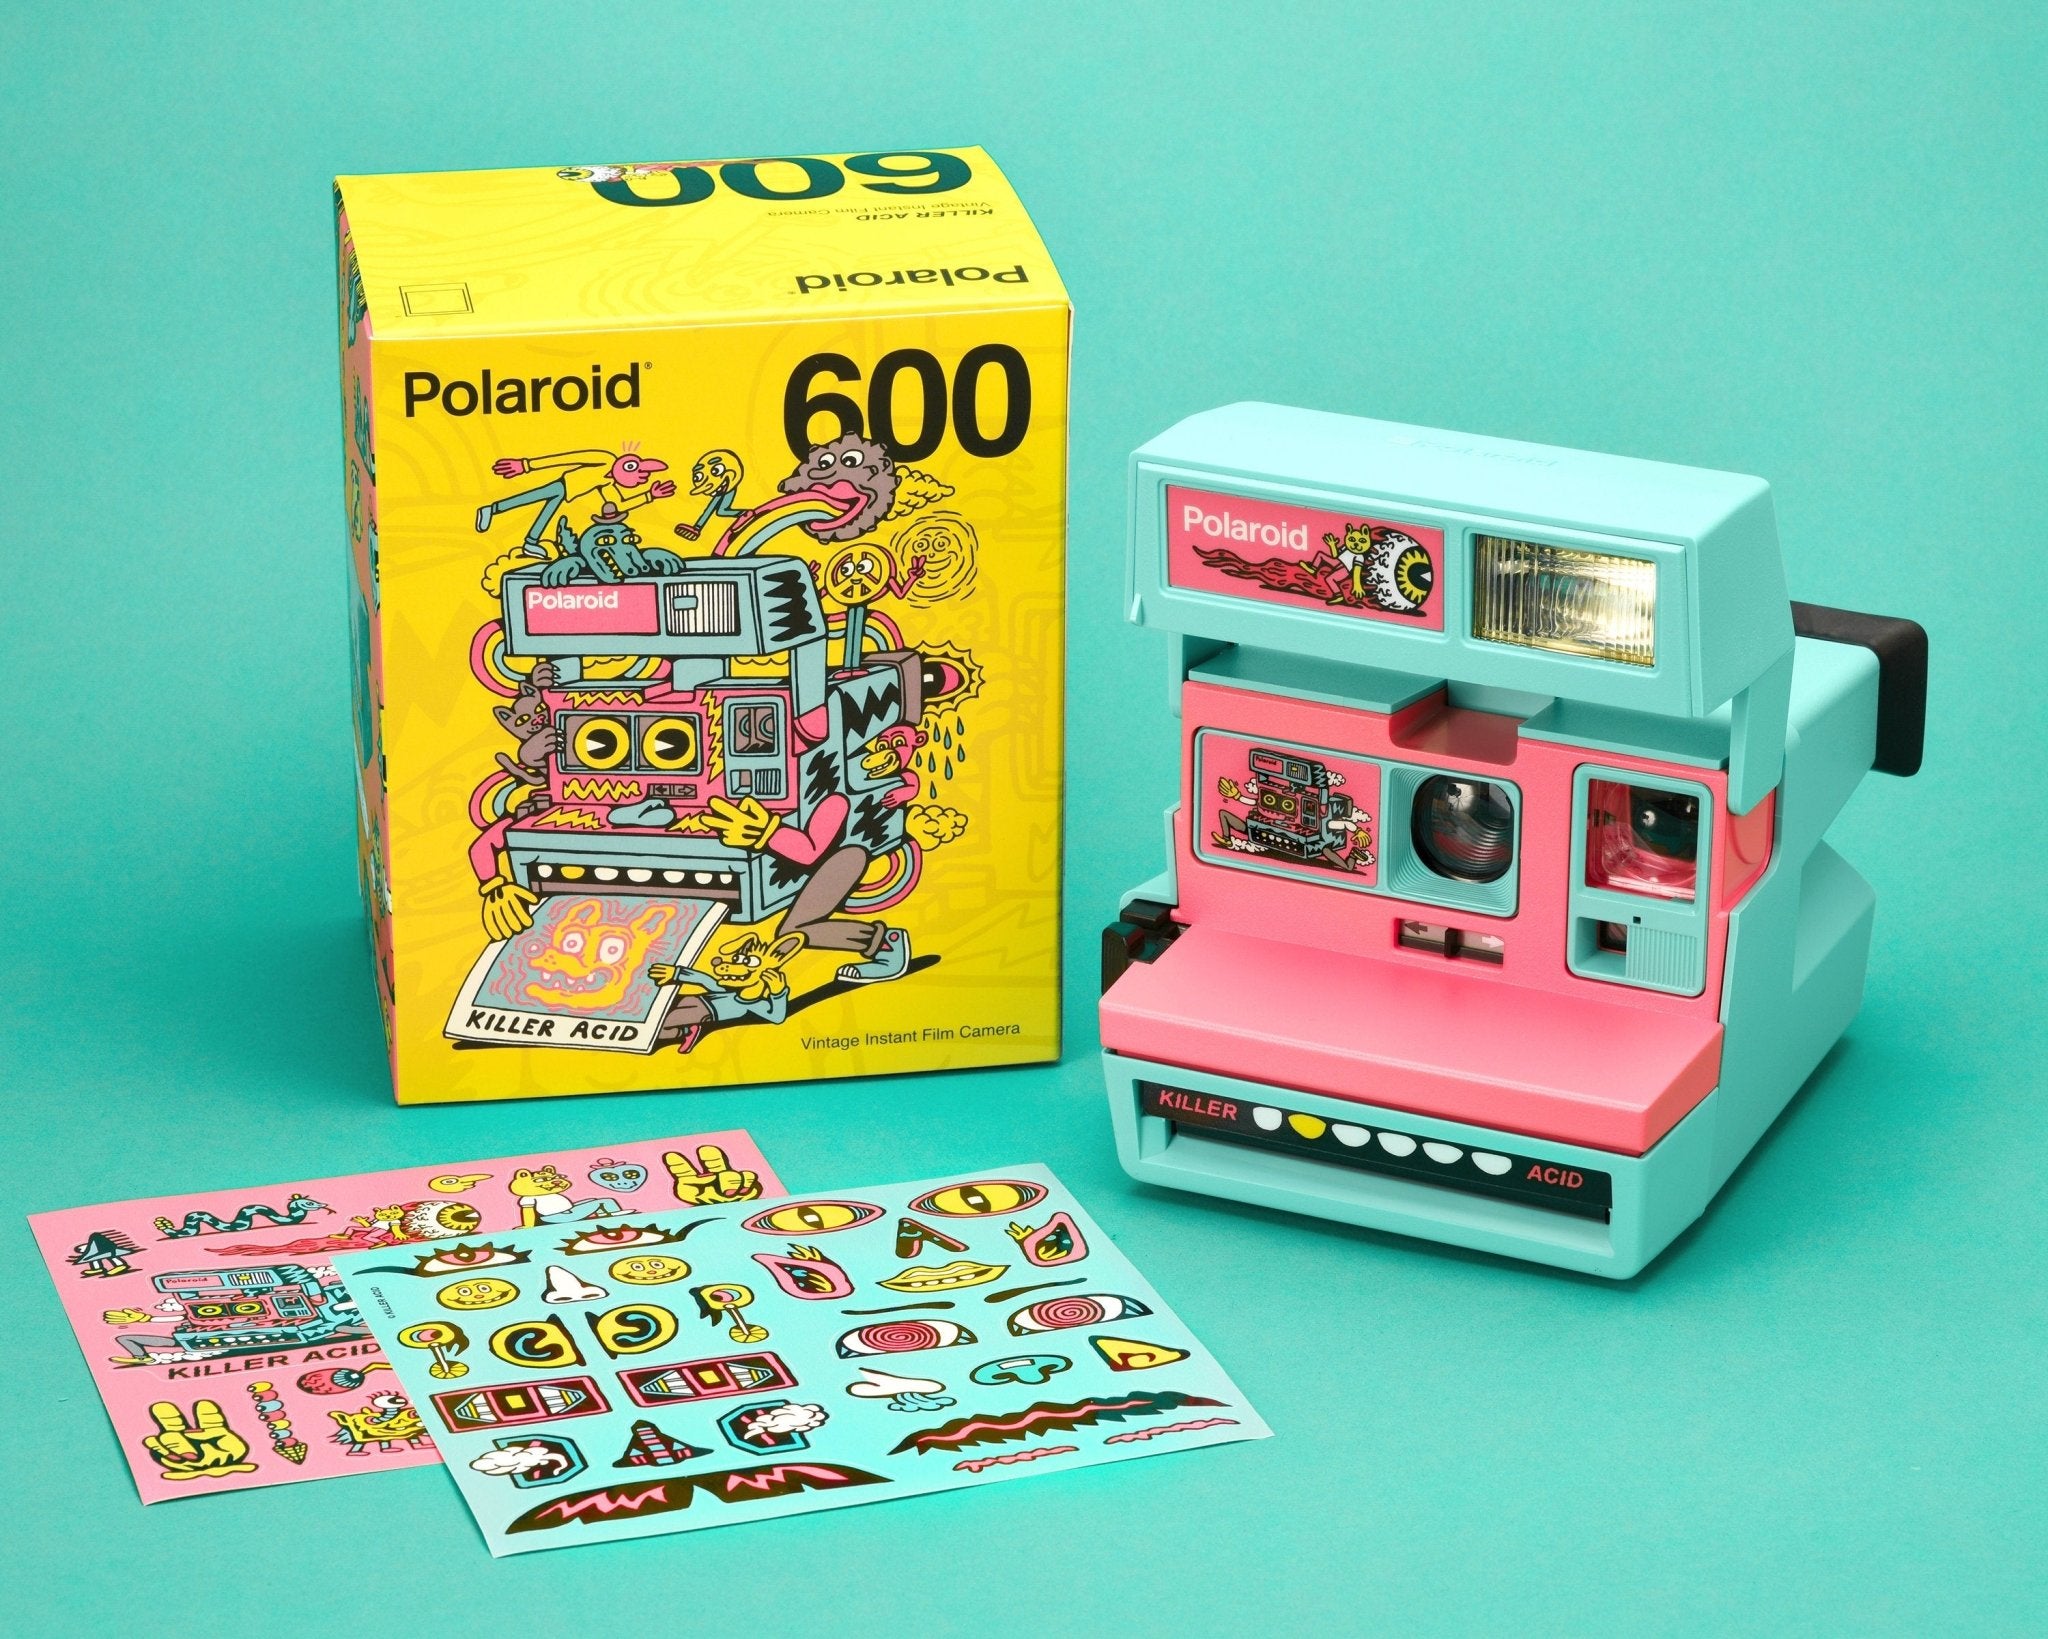 Retro Polaroid Cool Cam 600 Instant Film Camera – Film Camera Store